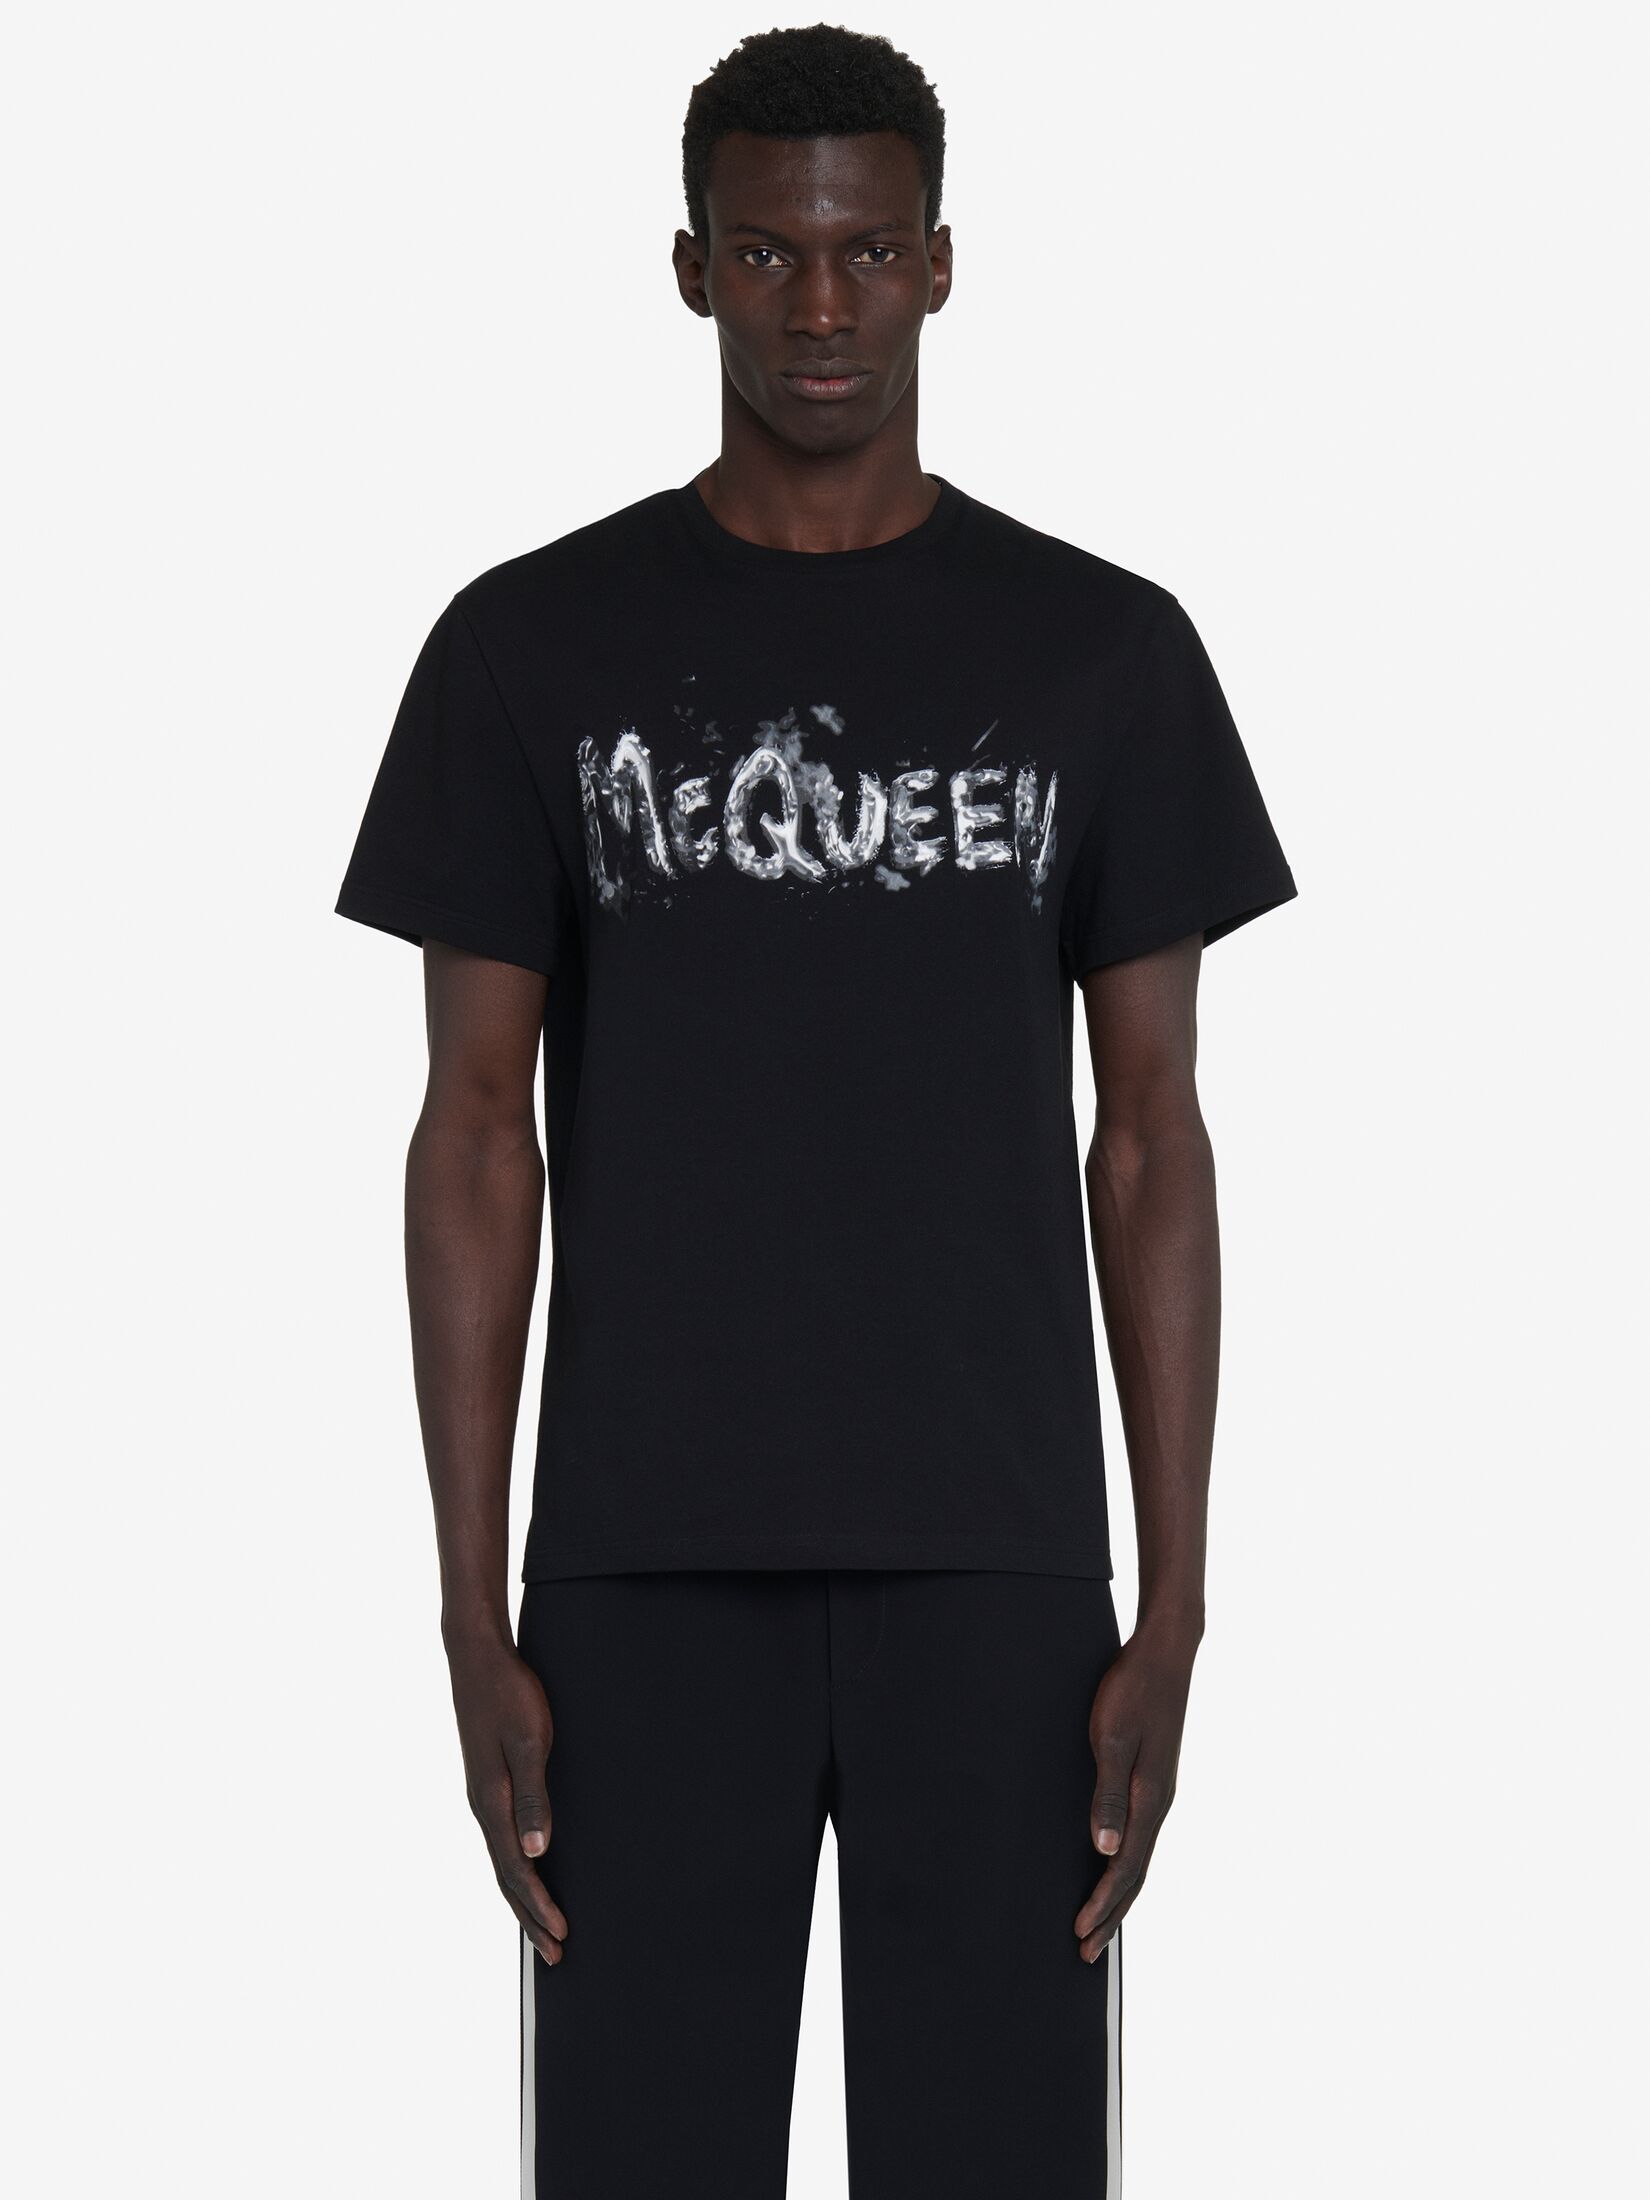 McQueen Graffiti-T-Shirt